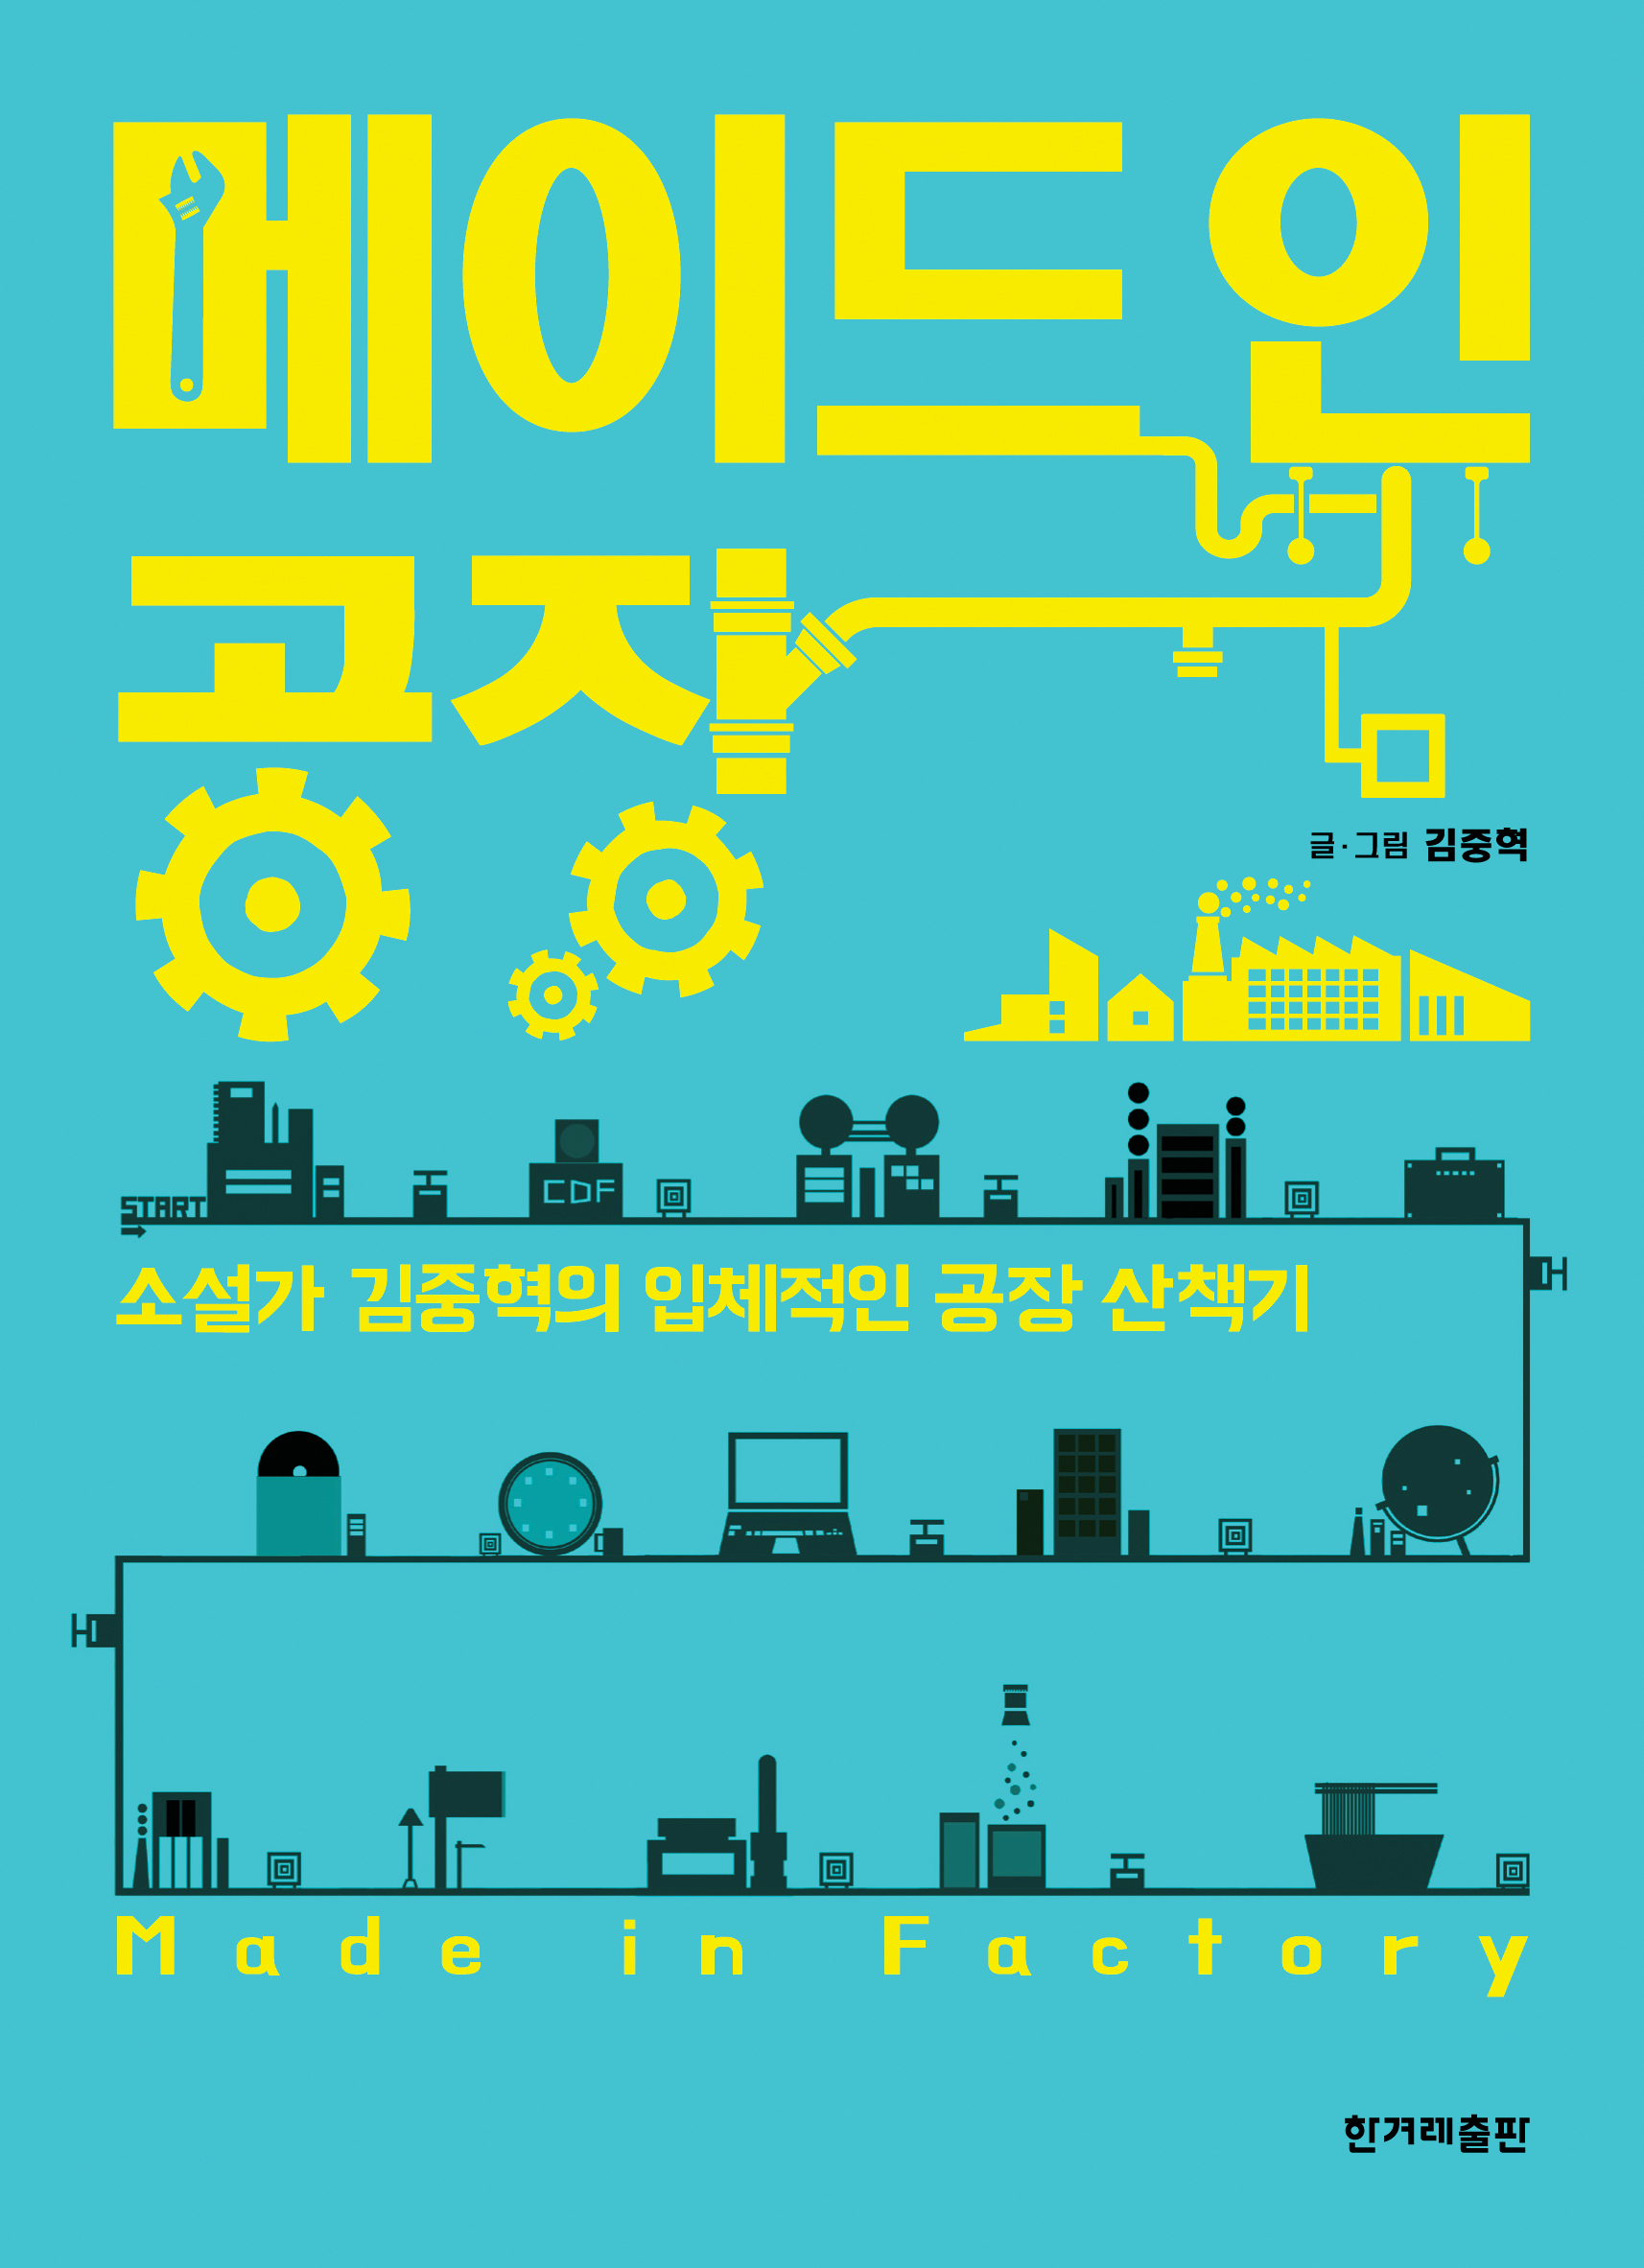 <메이드 인 공장展>, 장소: 의정부과학도서관, 기간: 11월 1일 ~ 30일(일)